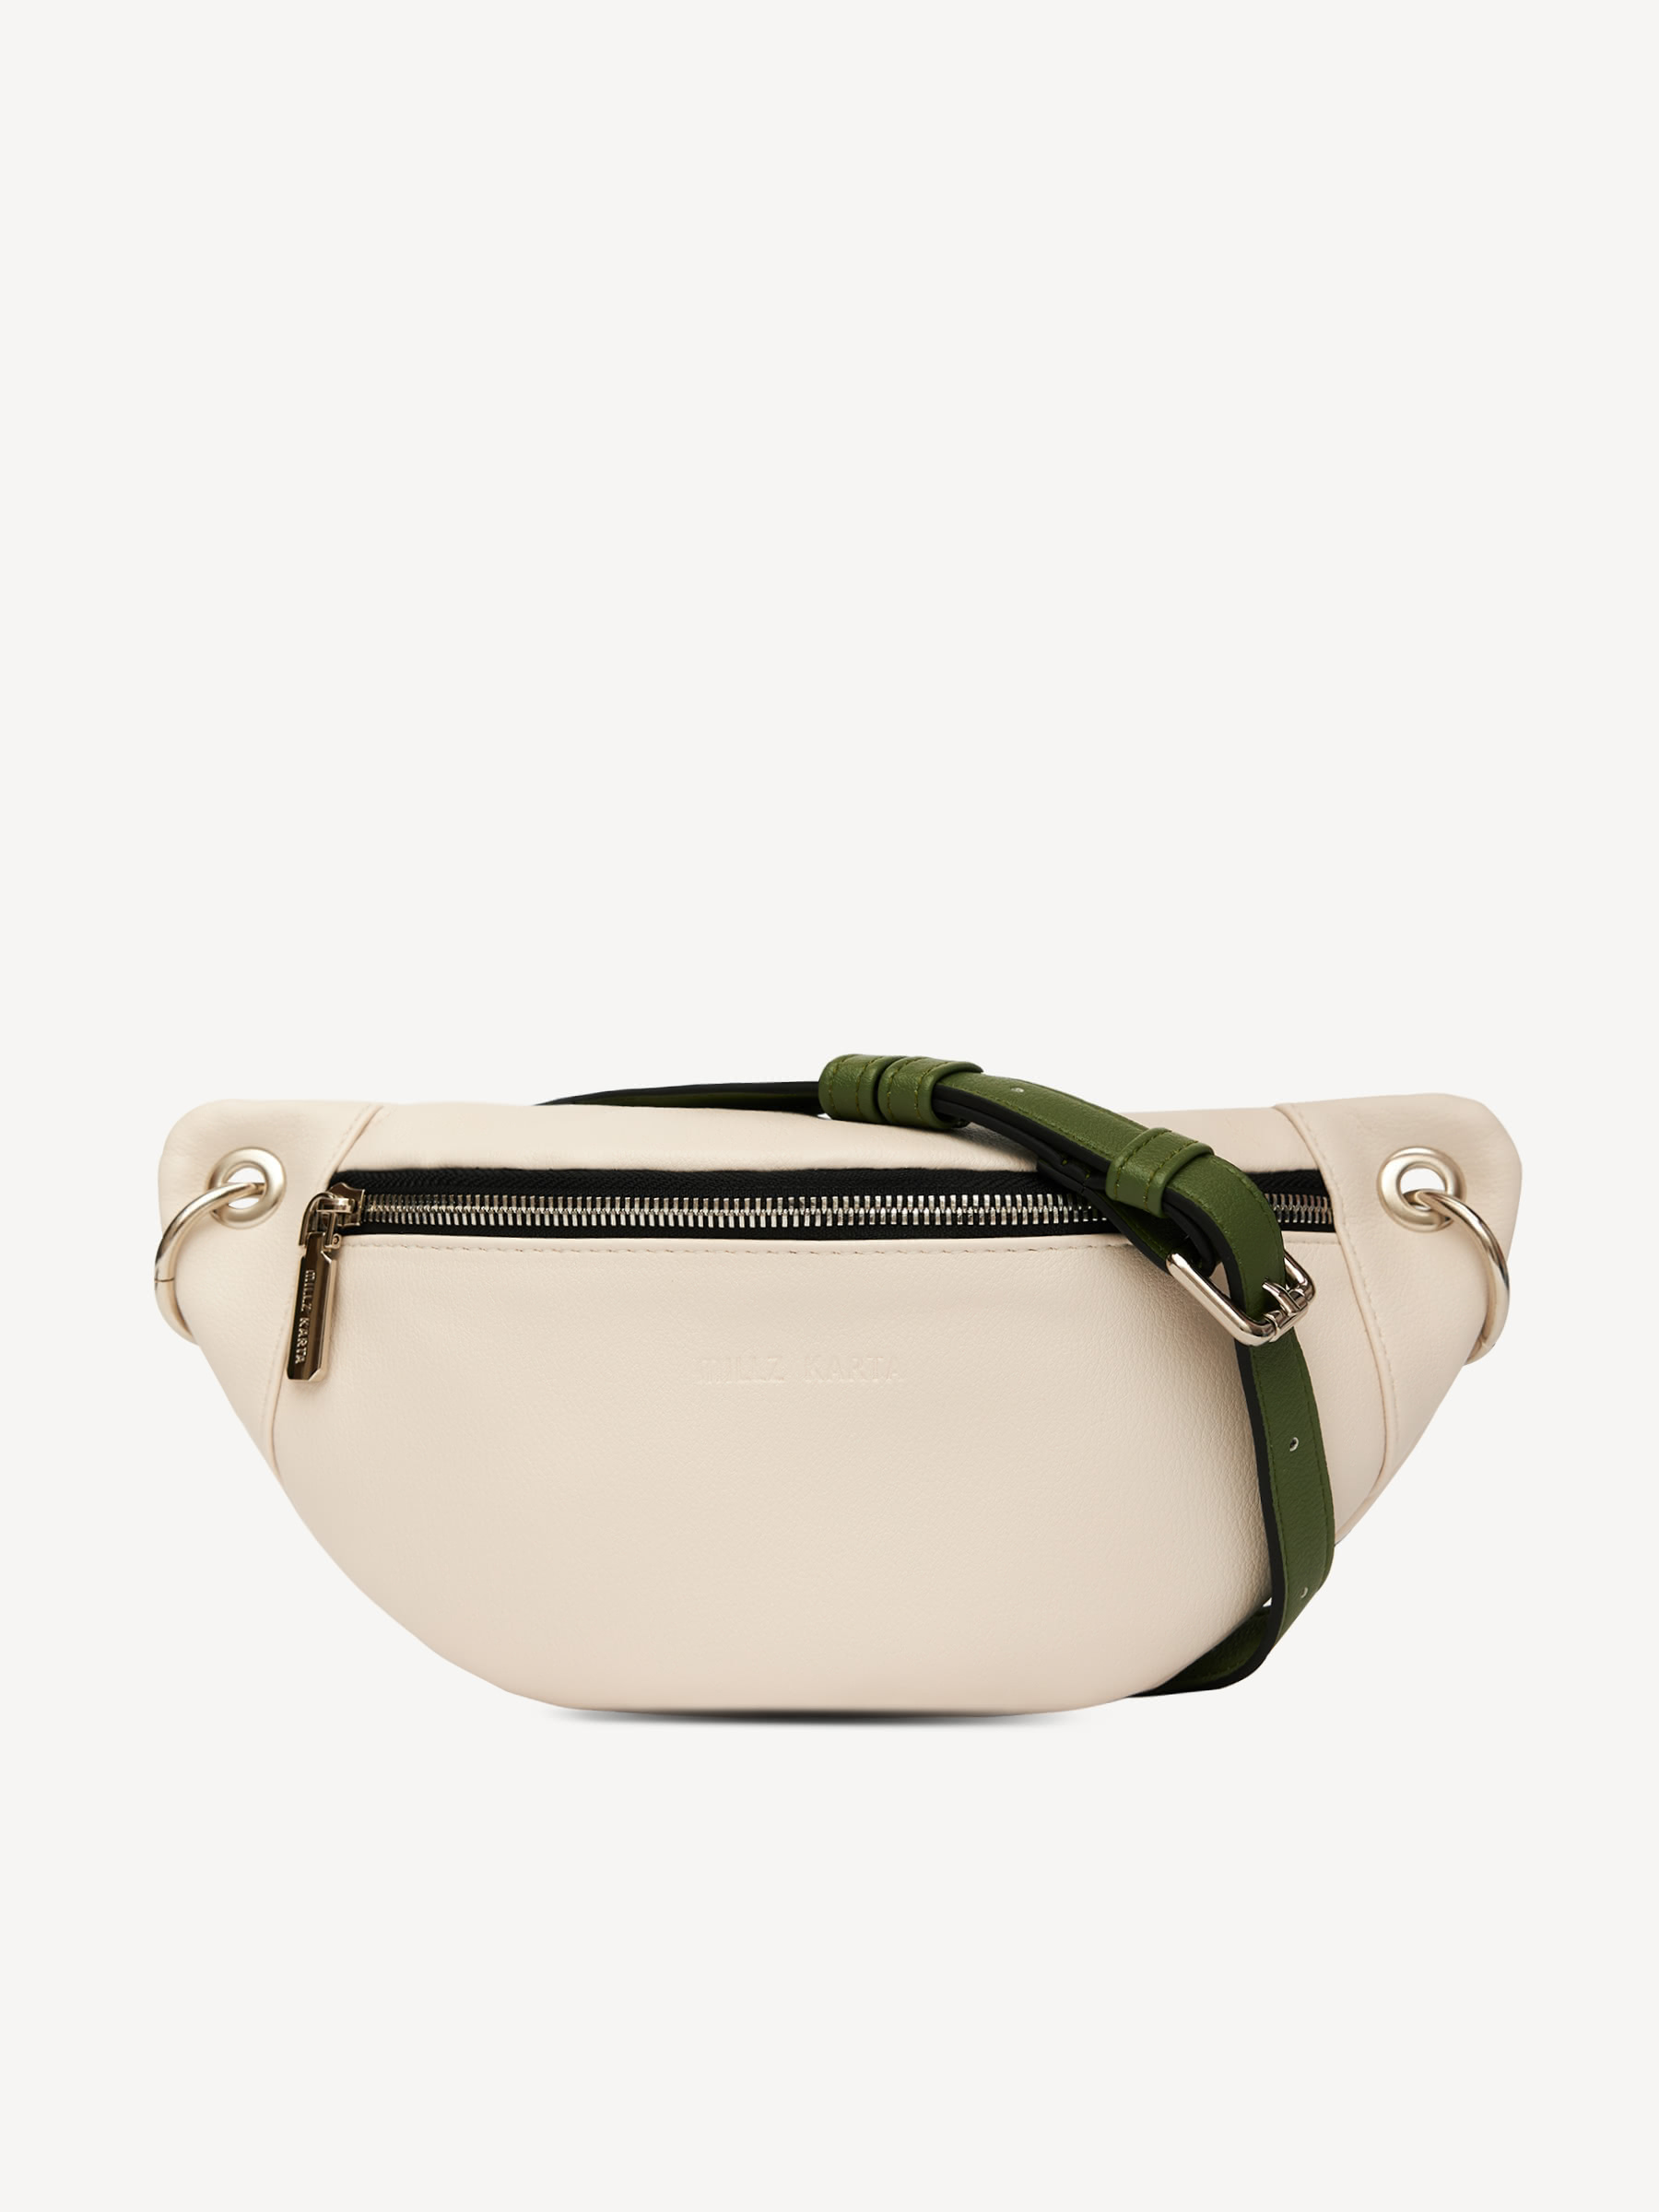 Поясная сумка женская MILLZ KARTA 002, белый/зеленый